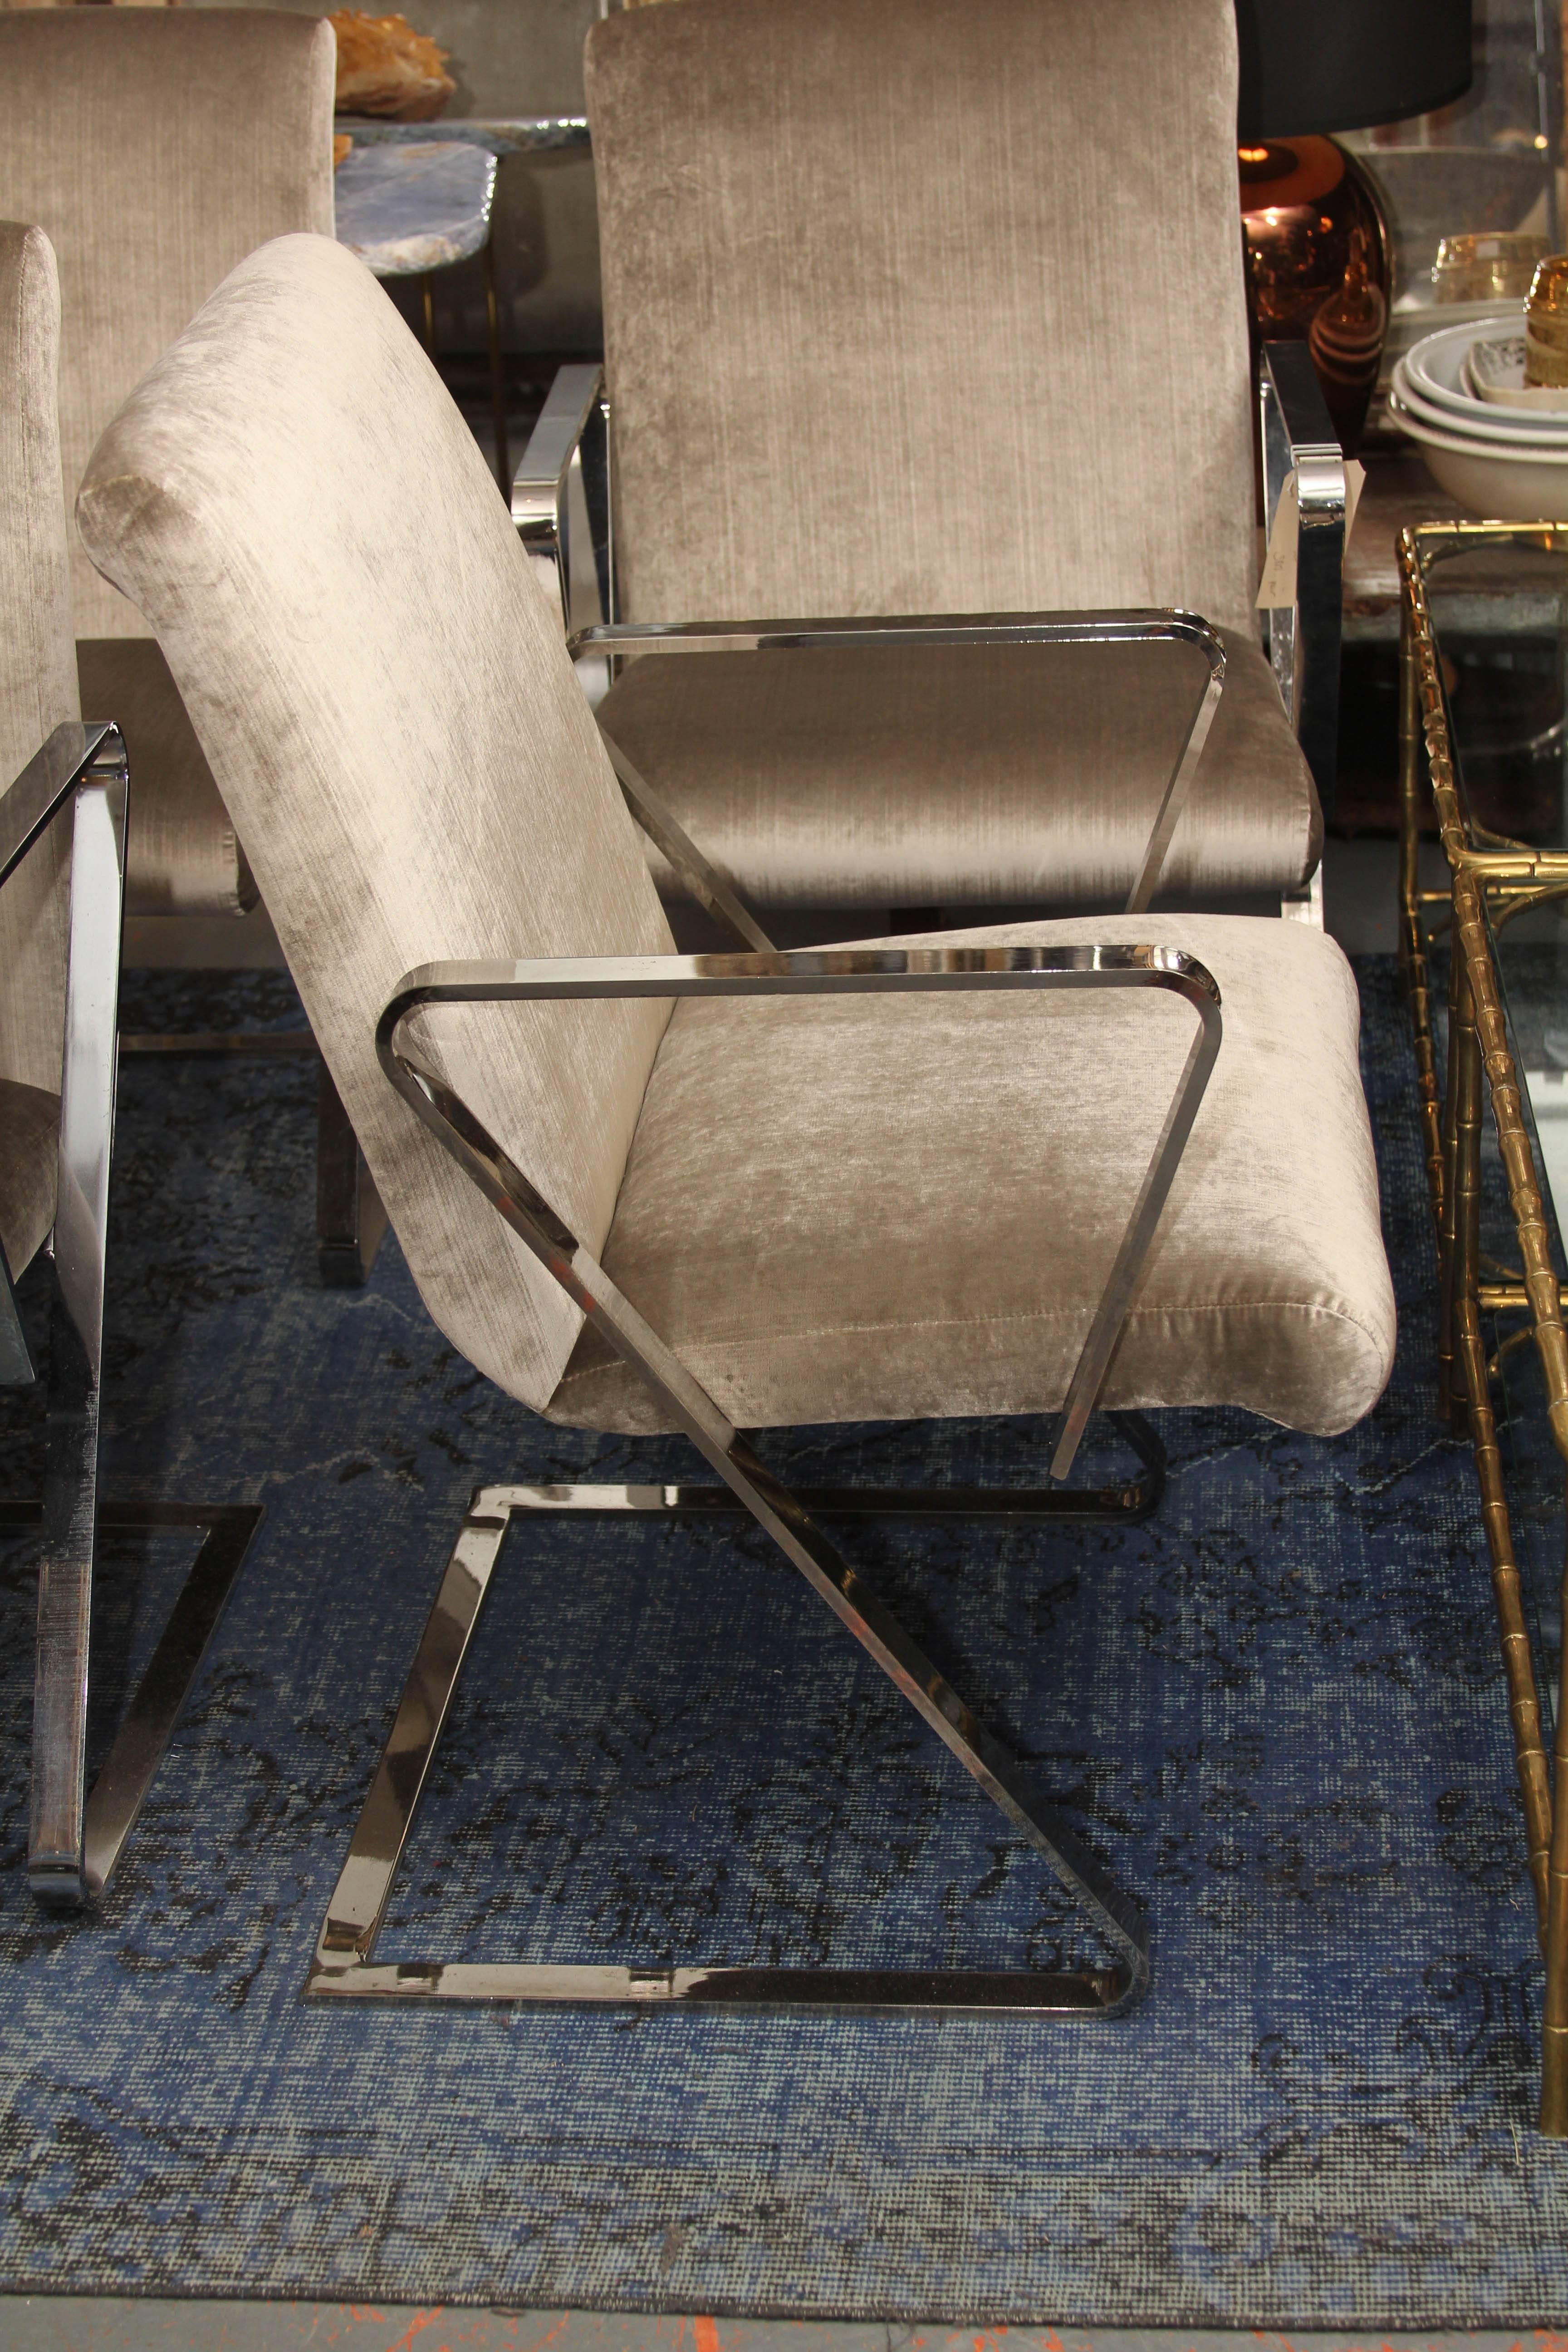 Ein Paar Stühle im Springer-Stil mit schwerem Chromgestell, gepolstert mit schönem Seidensamt. Jedes Paar zum Preis von 3800. Perfekte Beistell- oder Esszimmerstühle. Sie sind superbequem und der Federungsfaktor macht diese Stühle zu denjenigen, die